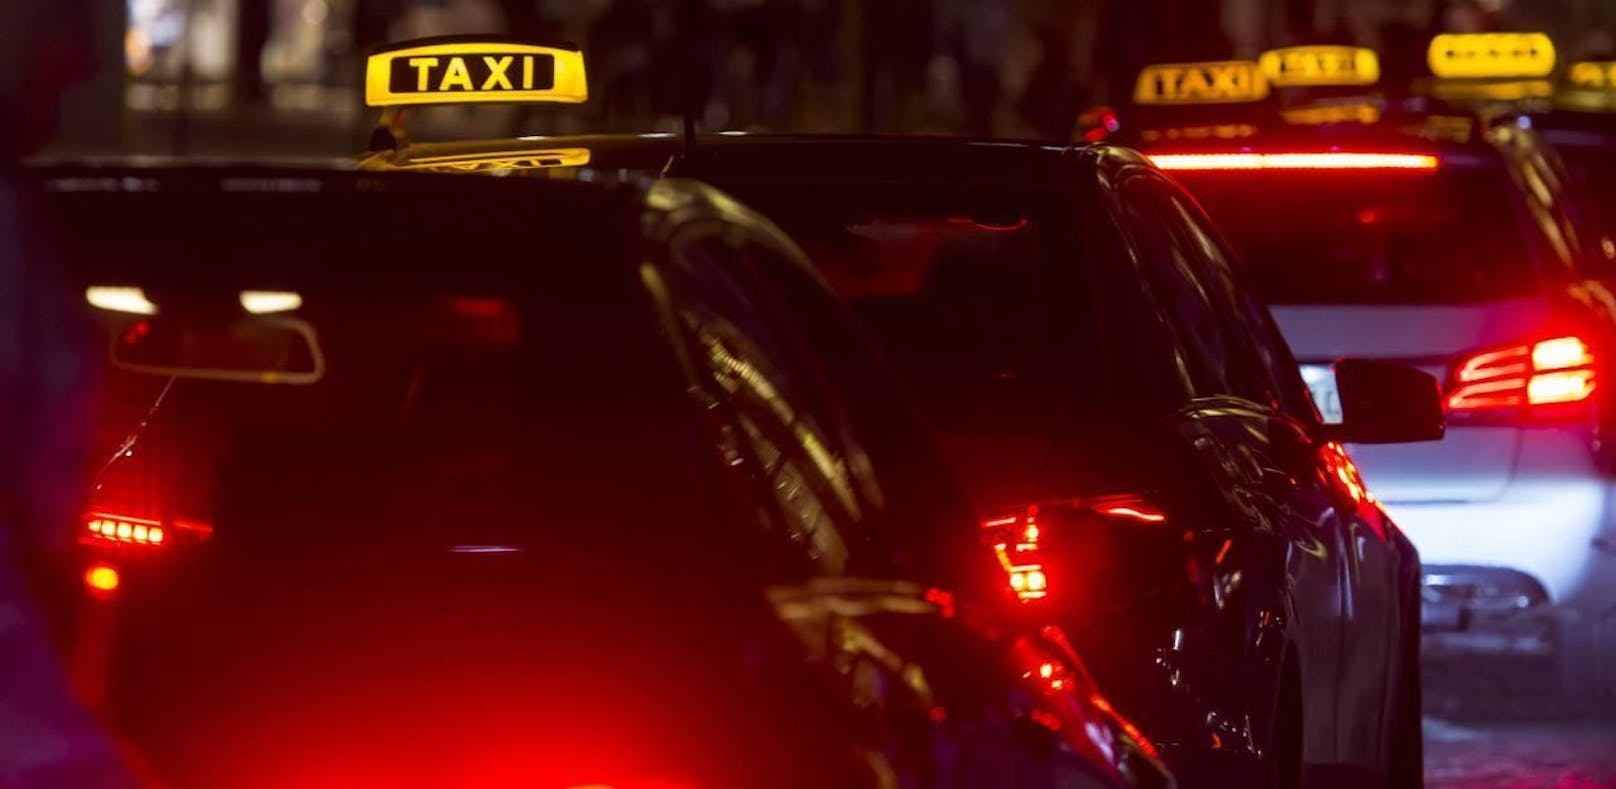 Der Taxifahrer wurde von mehreren Jugendlichen bedroht